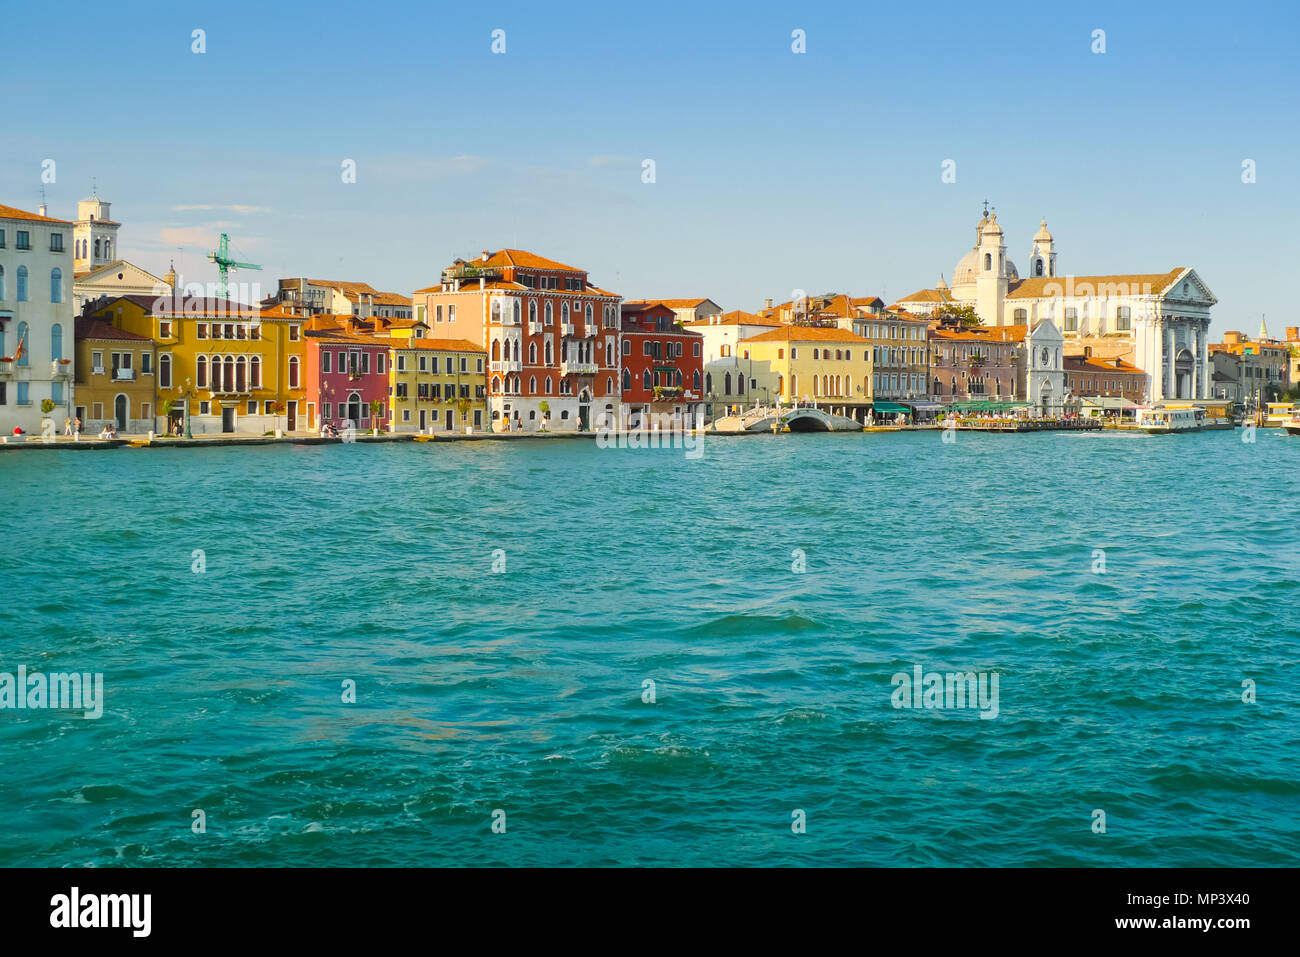 Zattere Bereich aus einem Boot in Canale della Giudecca, Venedig gesehen Stockfoto